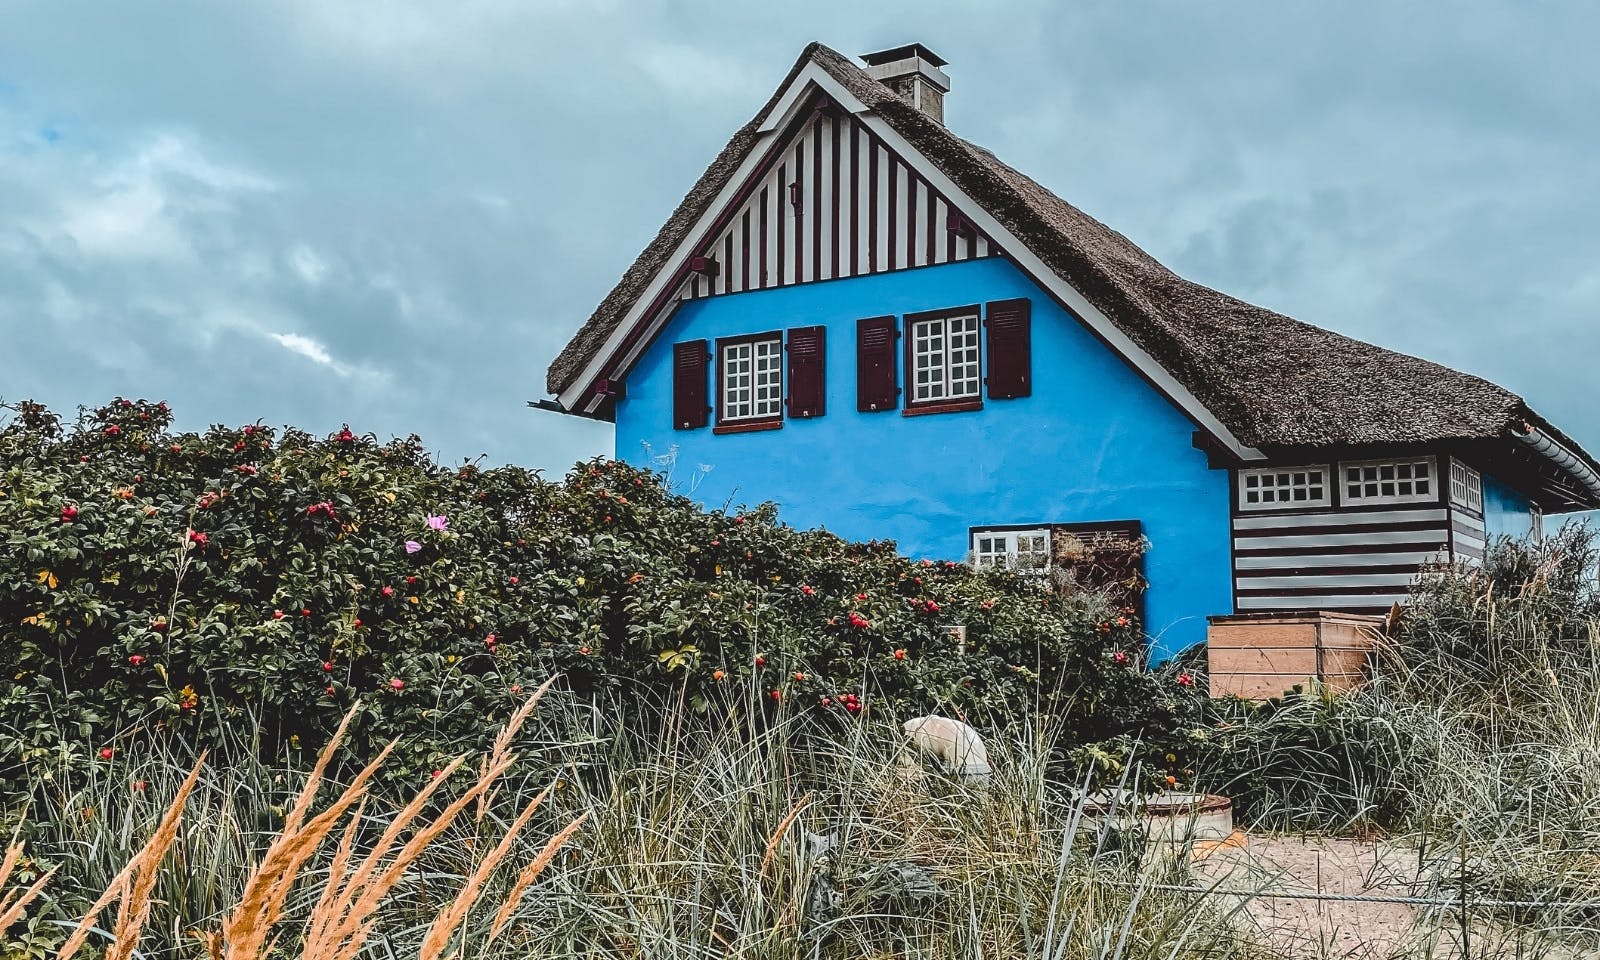 Das blaue Haus auf dem Graswarder in Heiligenhafen am Strand